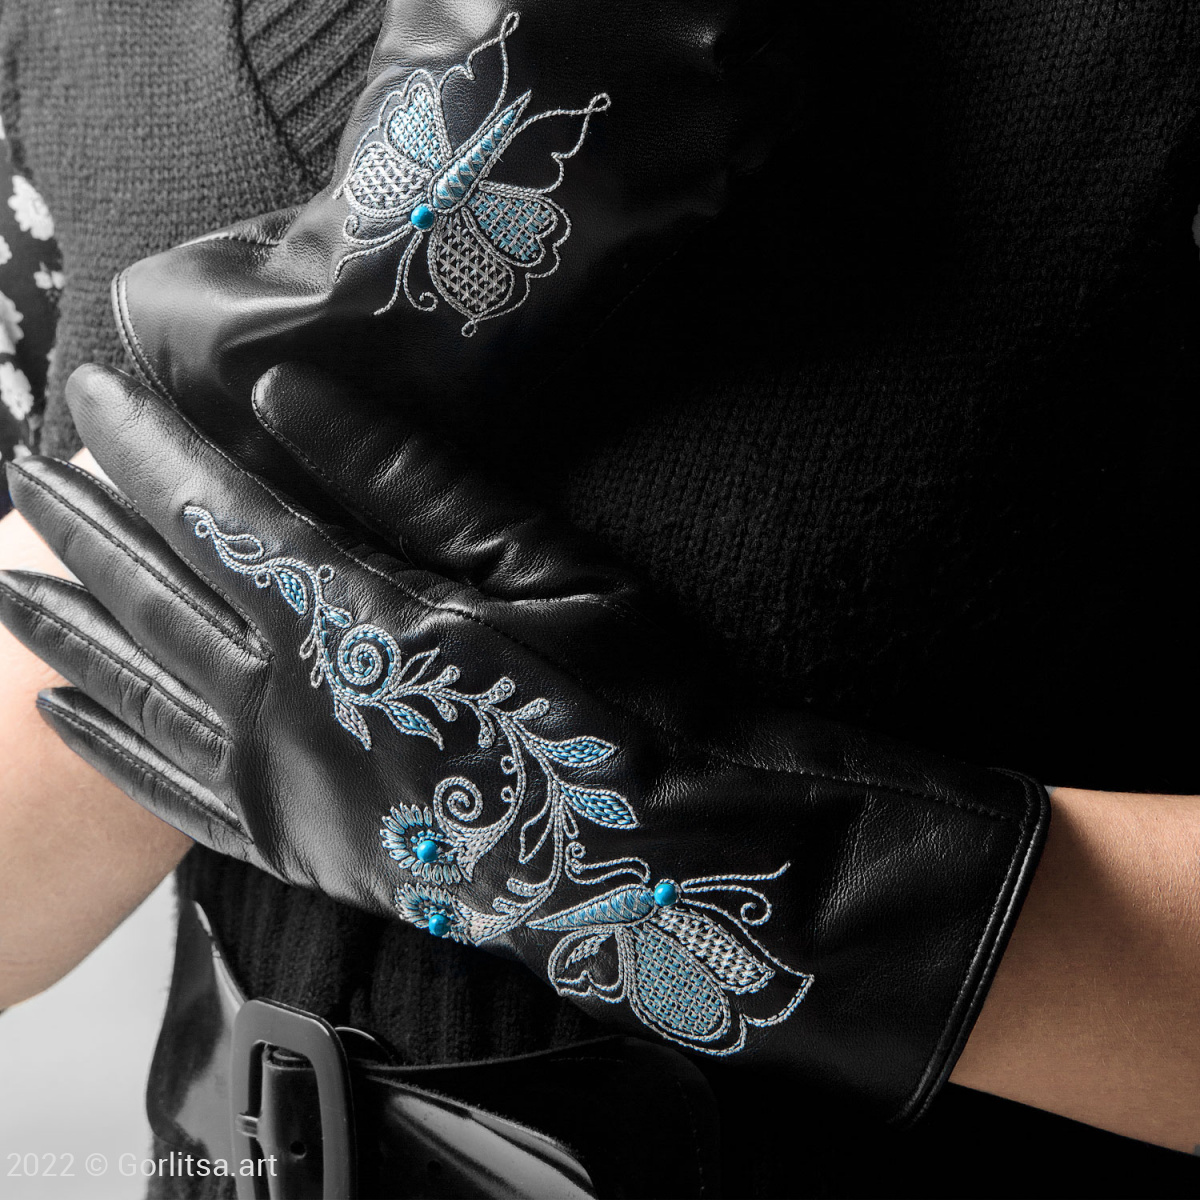 Перчатки женские «Бабочка»,112/154, цвет: чёрный, /серебро, кожа нат. кожа Киселева Г.А. фото 2